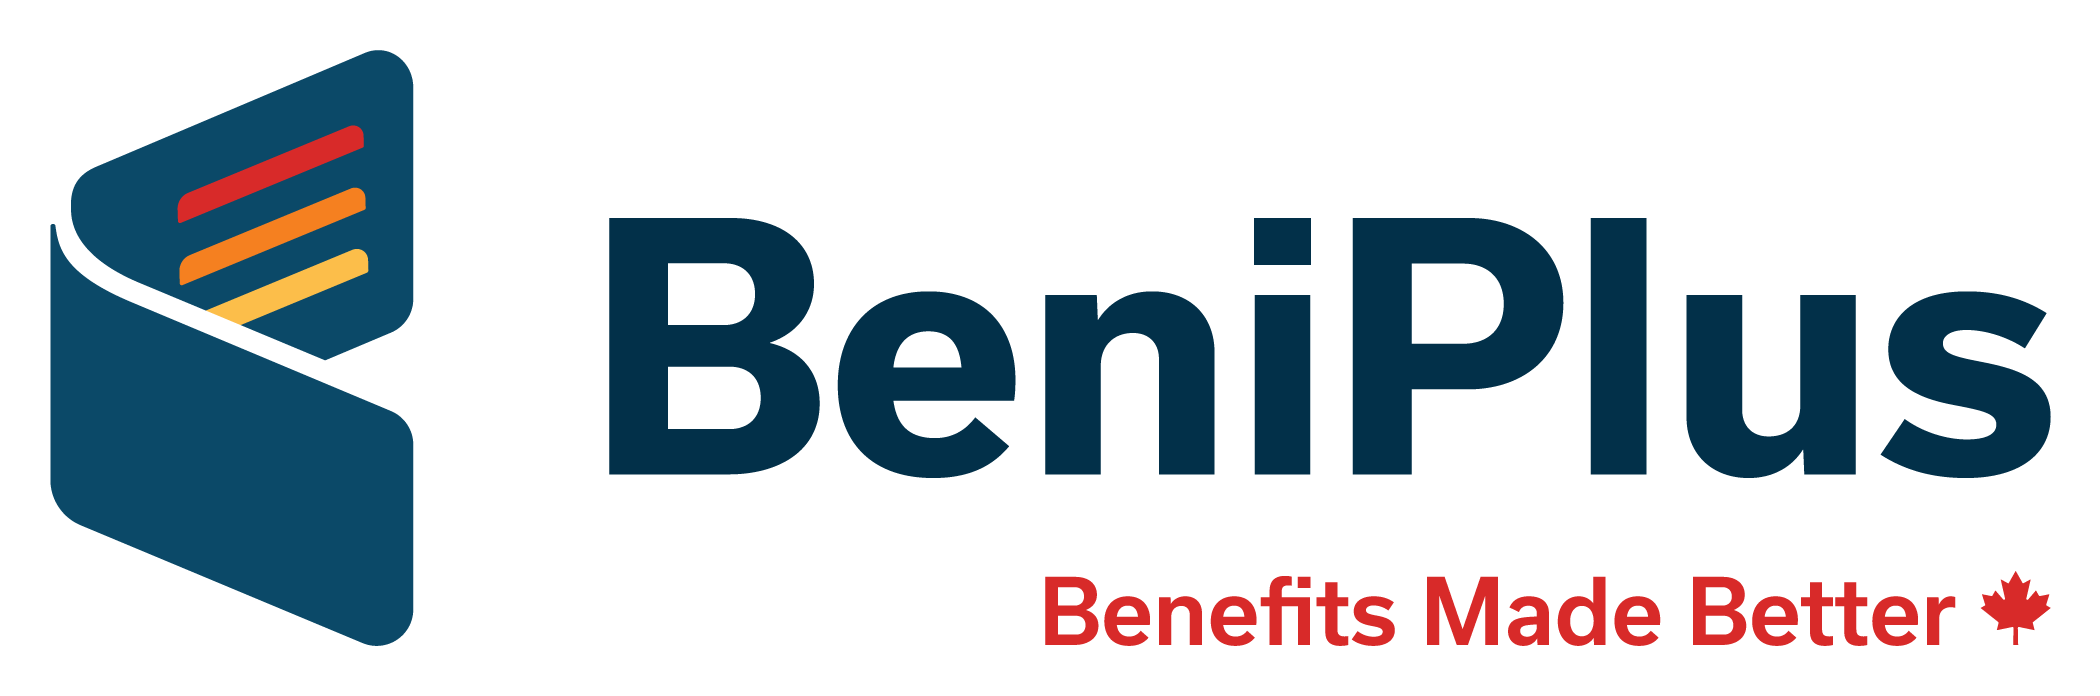 BeniPlus_Logos_1-3